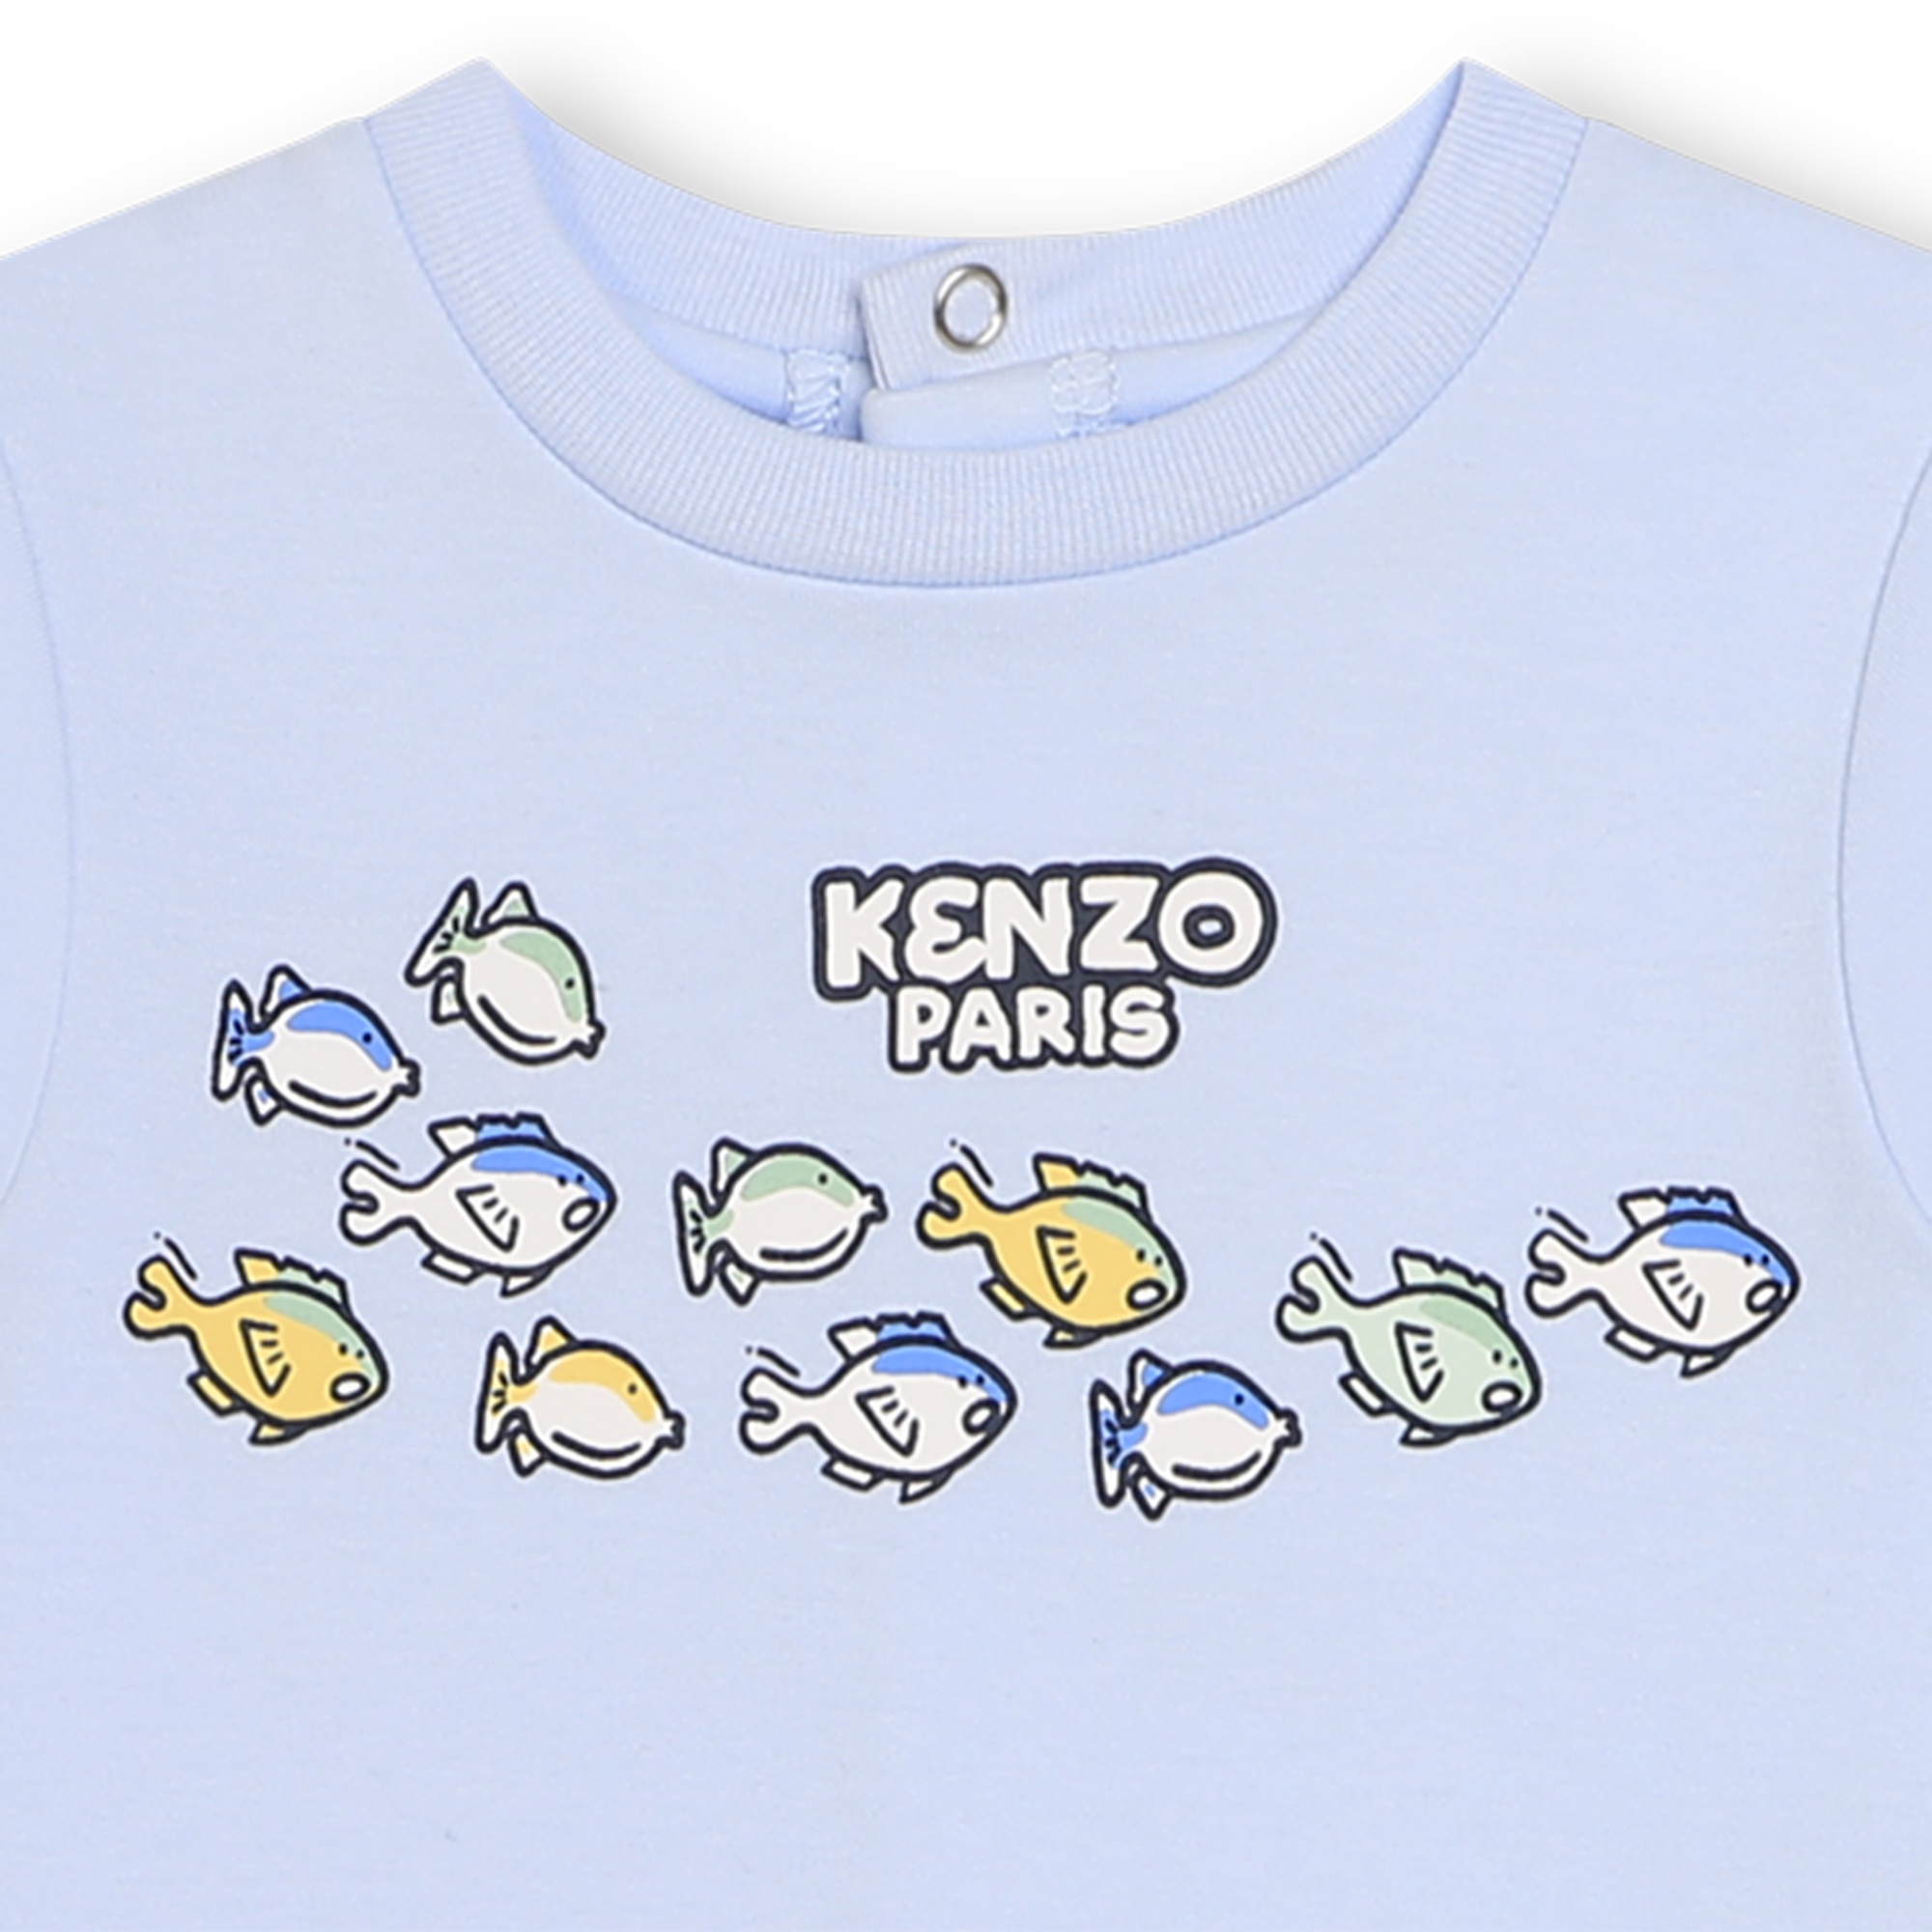 Pyjama mit Printmotiven KENZO KIDS Für JUNGE